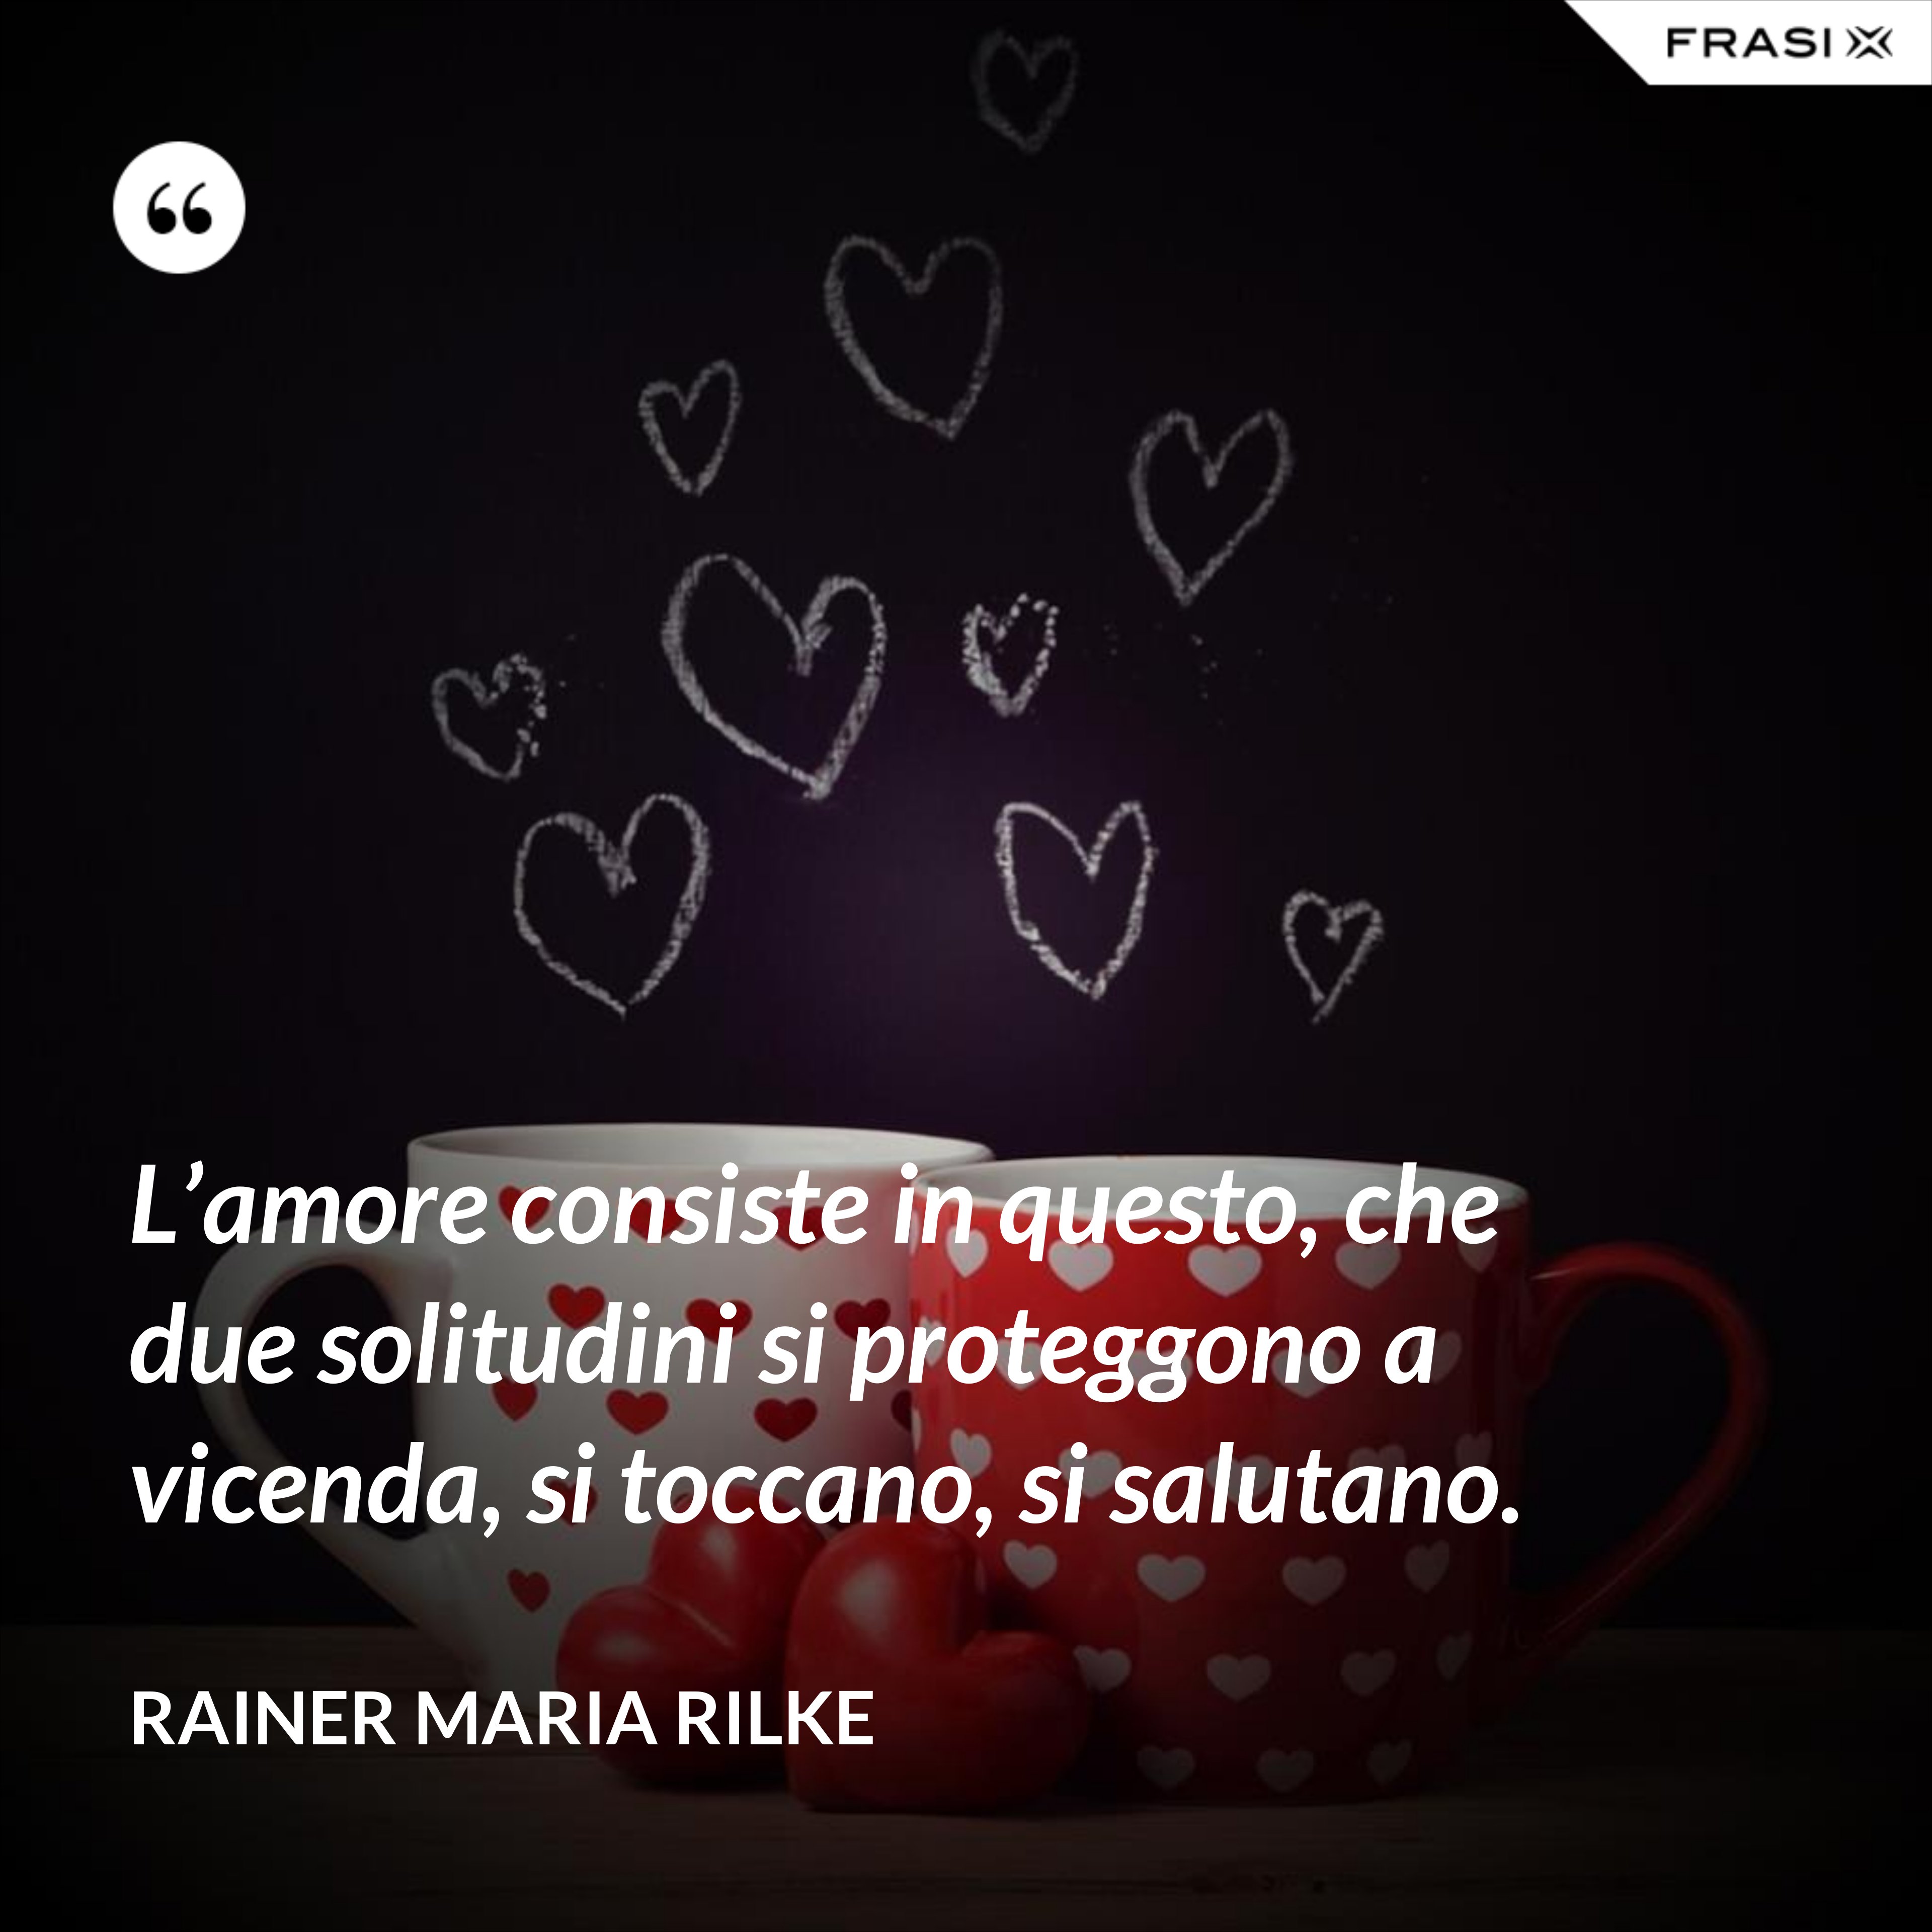 L’amore consiste in questo, che due solitudini si proteggono a vicenda, si toccano, si salutano. - Rainer Maria Rilke